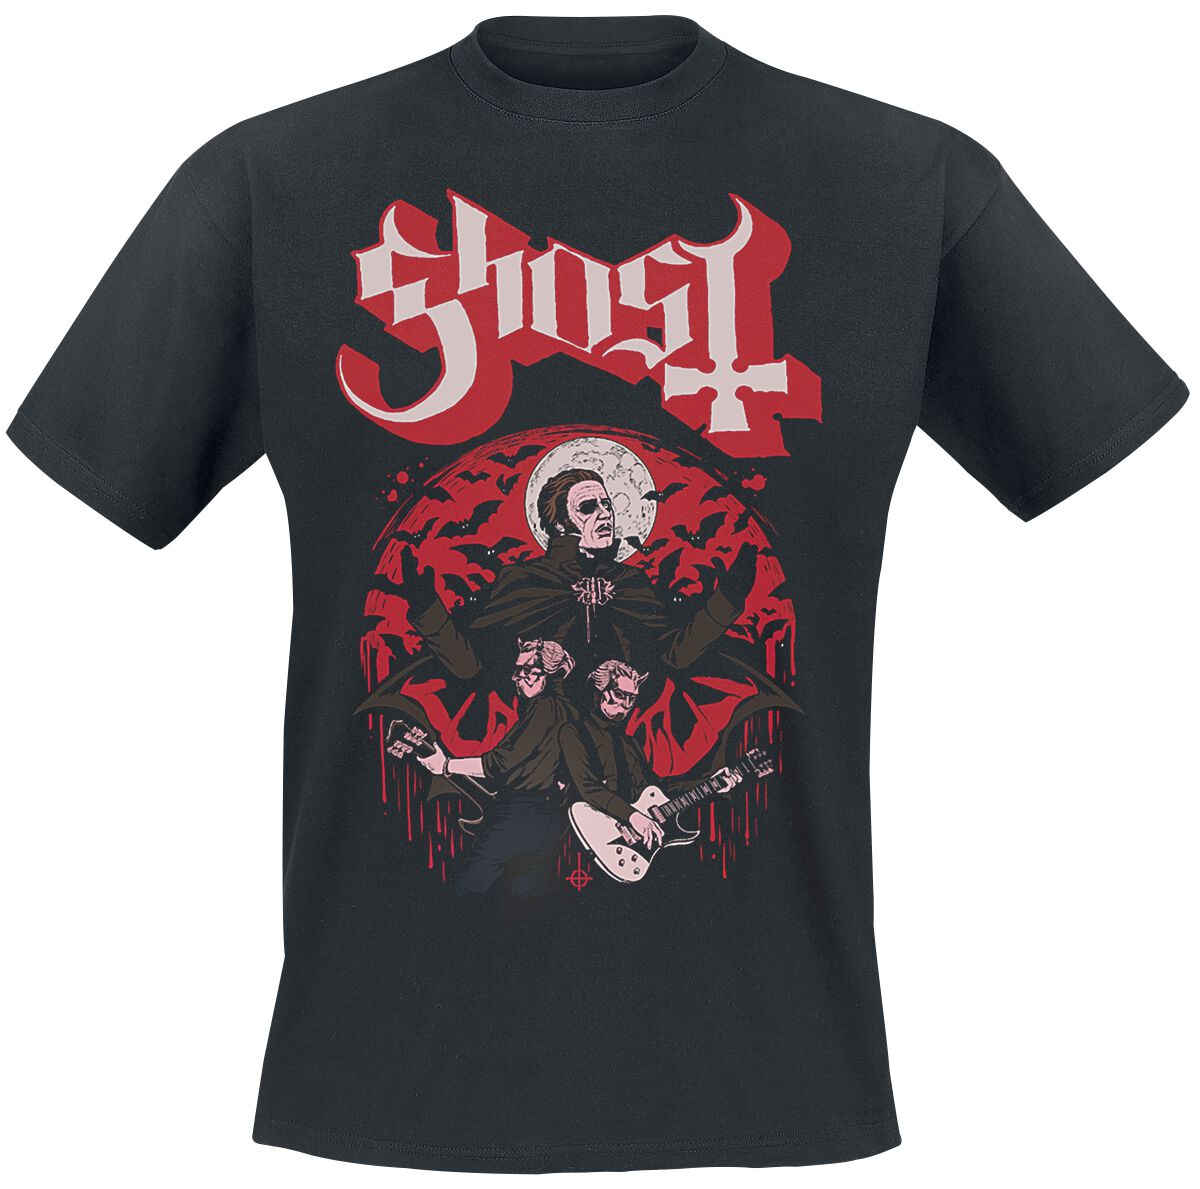 Ghost T-Shirt - Guitars - S bis 5XL - für Männer - Größe XL - schwarz  - Lizenziertes Merchandise!